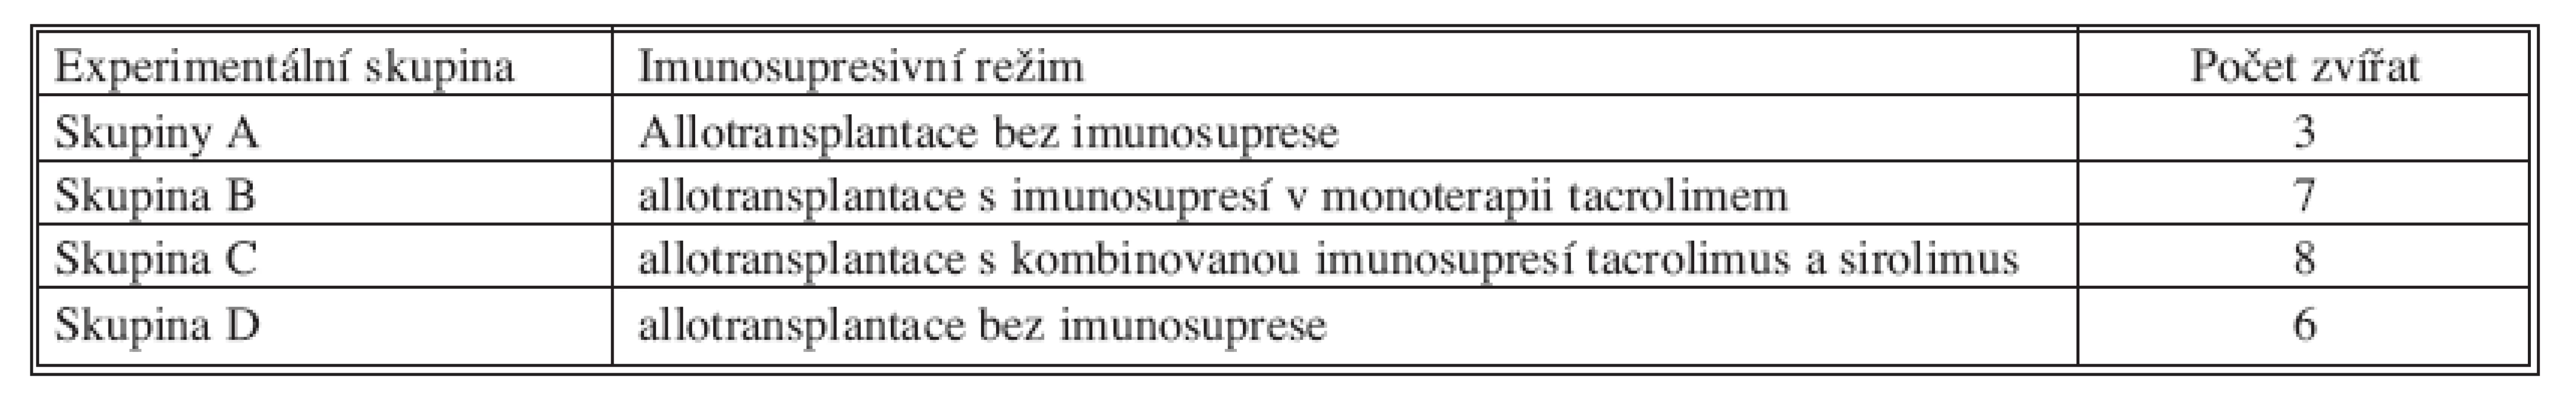 Rozdělení souboru podle podávané imunosuprese 
Tab. 1. Classification of the groups based on the administered immunosuppression therapy